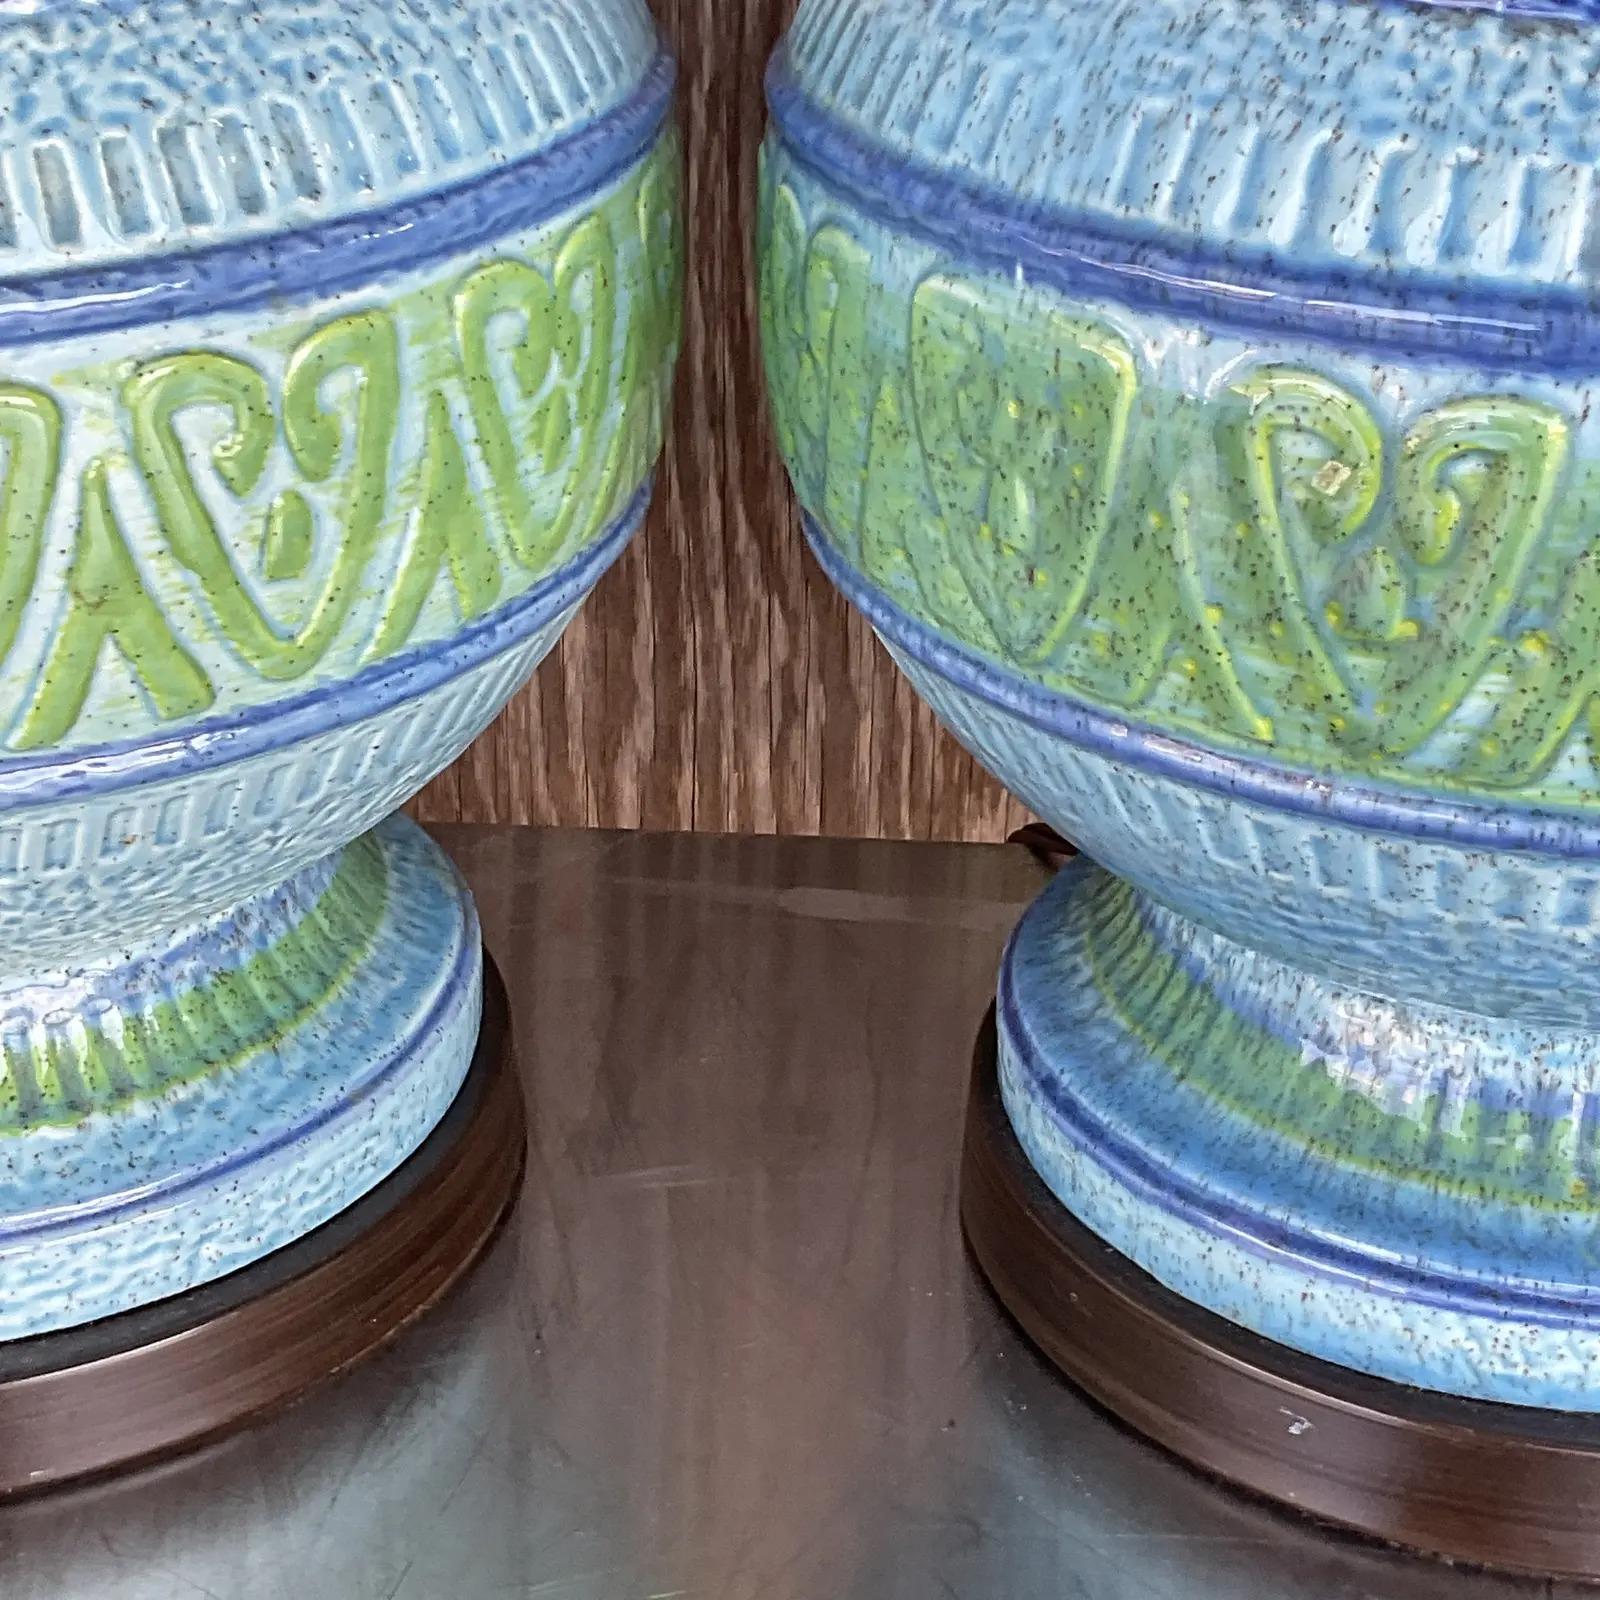 Exceptionnelle paire de lampes de table de style Midcentury. Un design bleu vert brillant avec des détails en relief. Acquis d'une propriété de Palm Beach.

Les lampes sont en très bon état. Petites éraflures et imperfections correspondant à leur